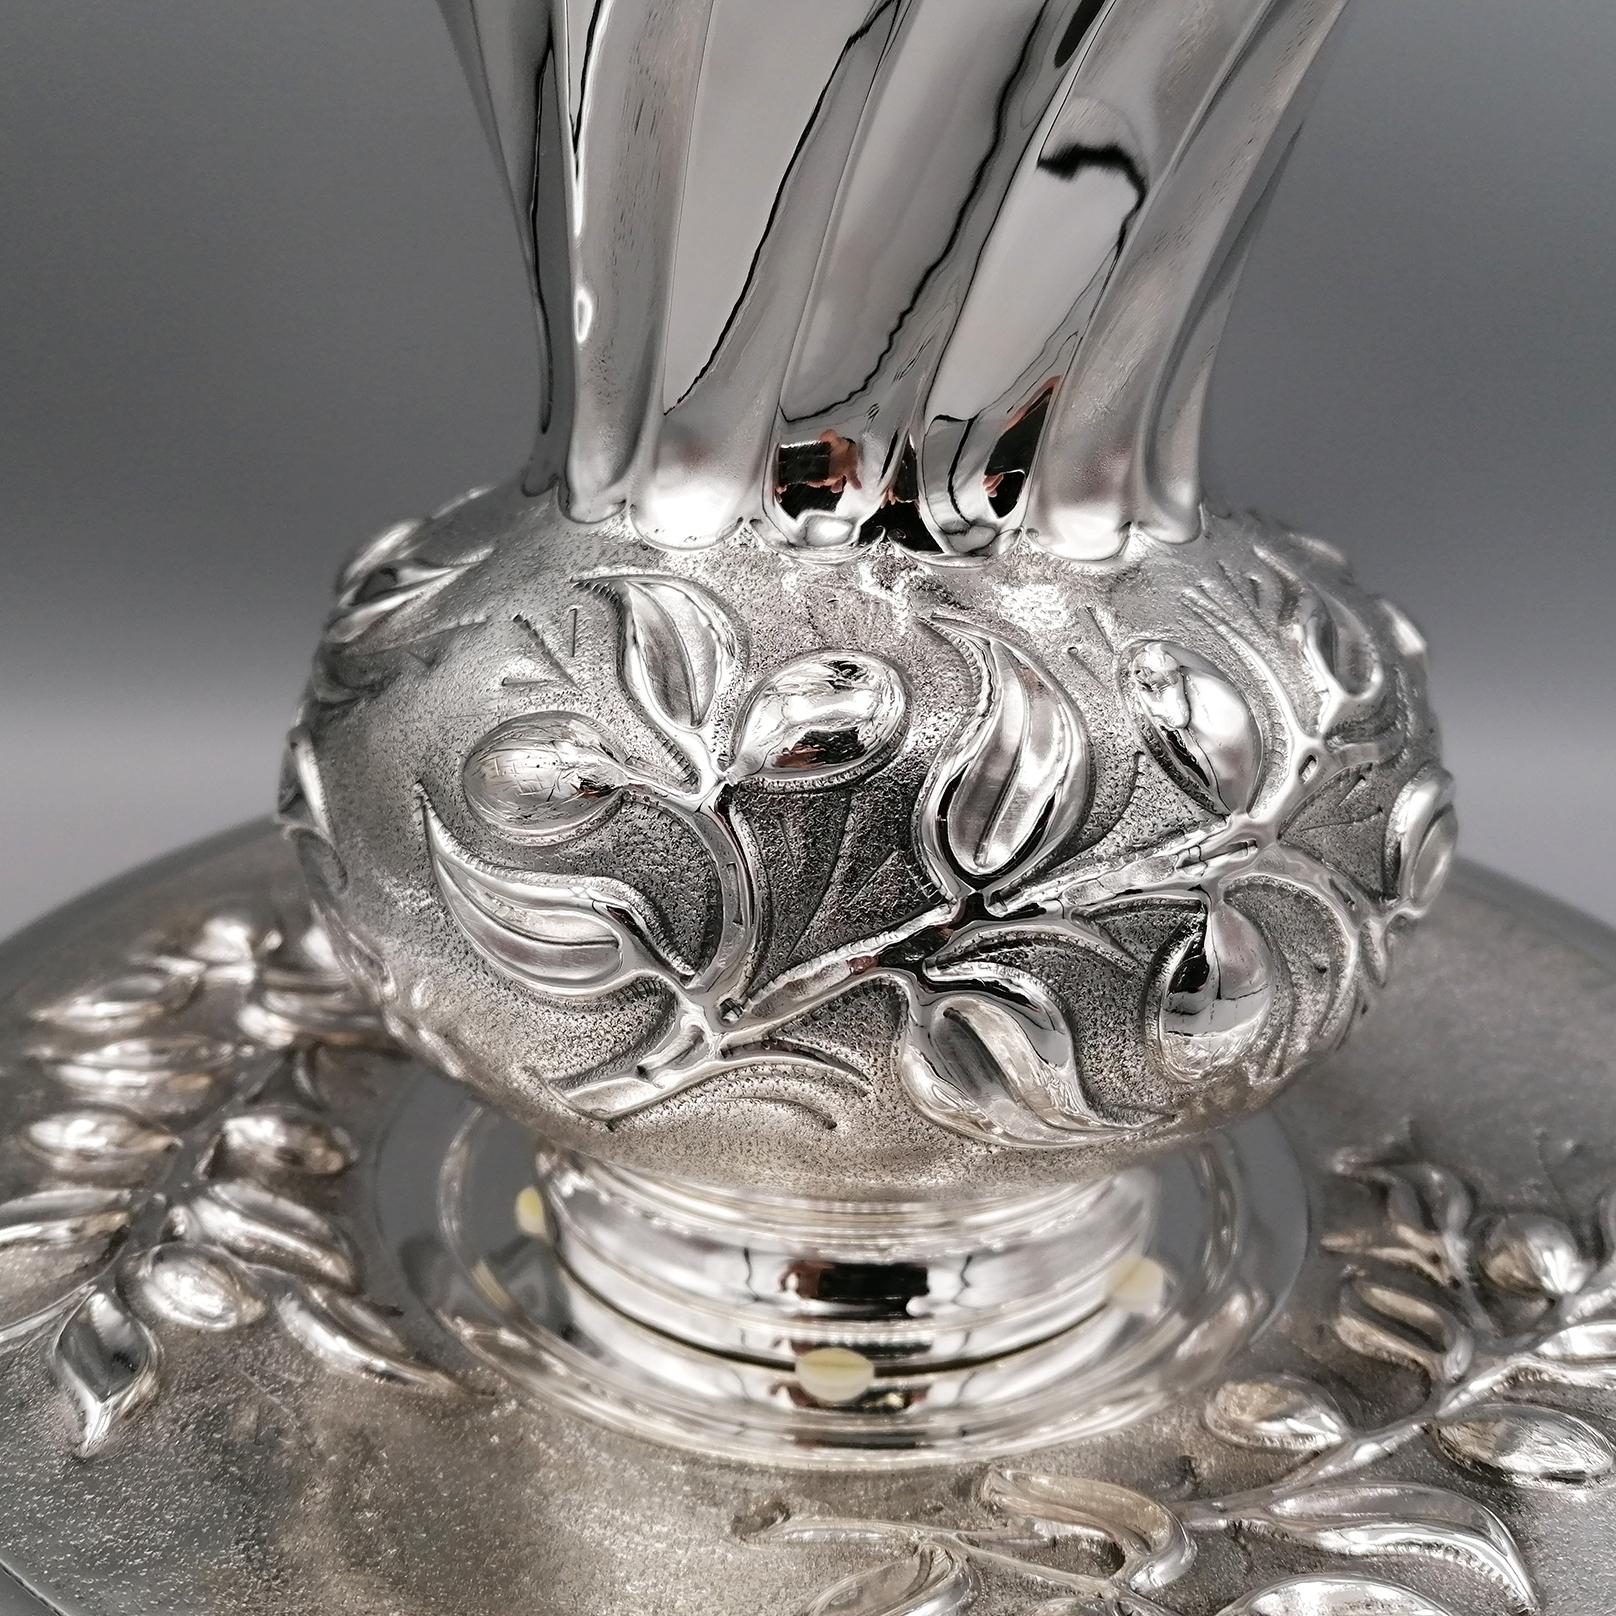 800 Silbervase mit Teller. Vollständig von Hand gefertigt, geprägt und gemeißelt. Der bauchige Teil der Vase ist mit Oliven- und Blattmotiven graviert und ziseliert. Die Oberfläche der Überhänge ist glänzend, während in den Zwischenräumen eine